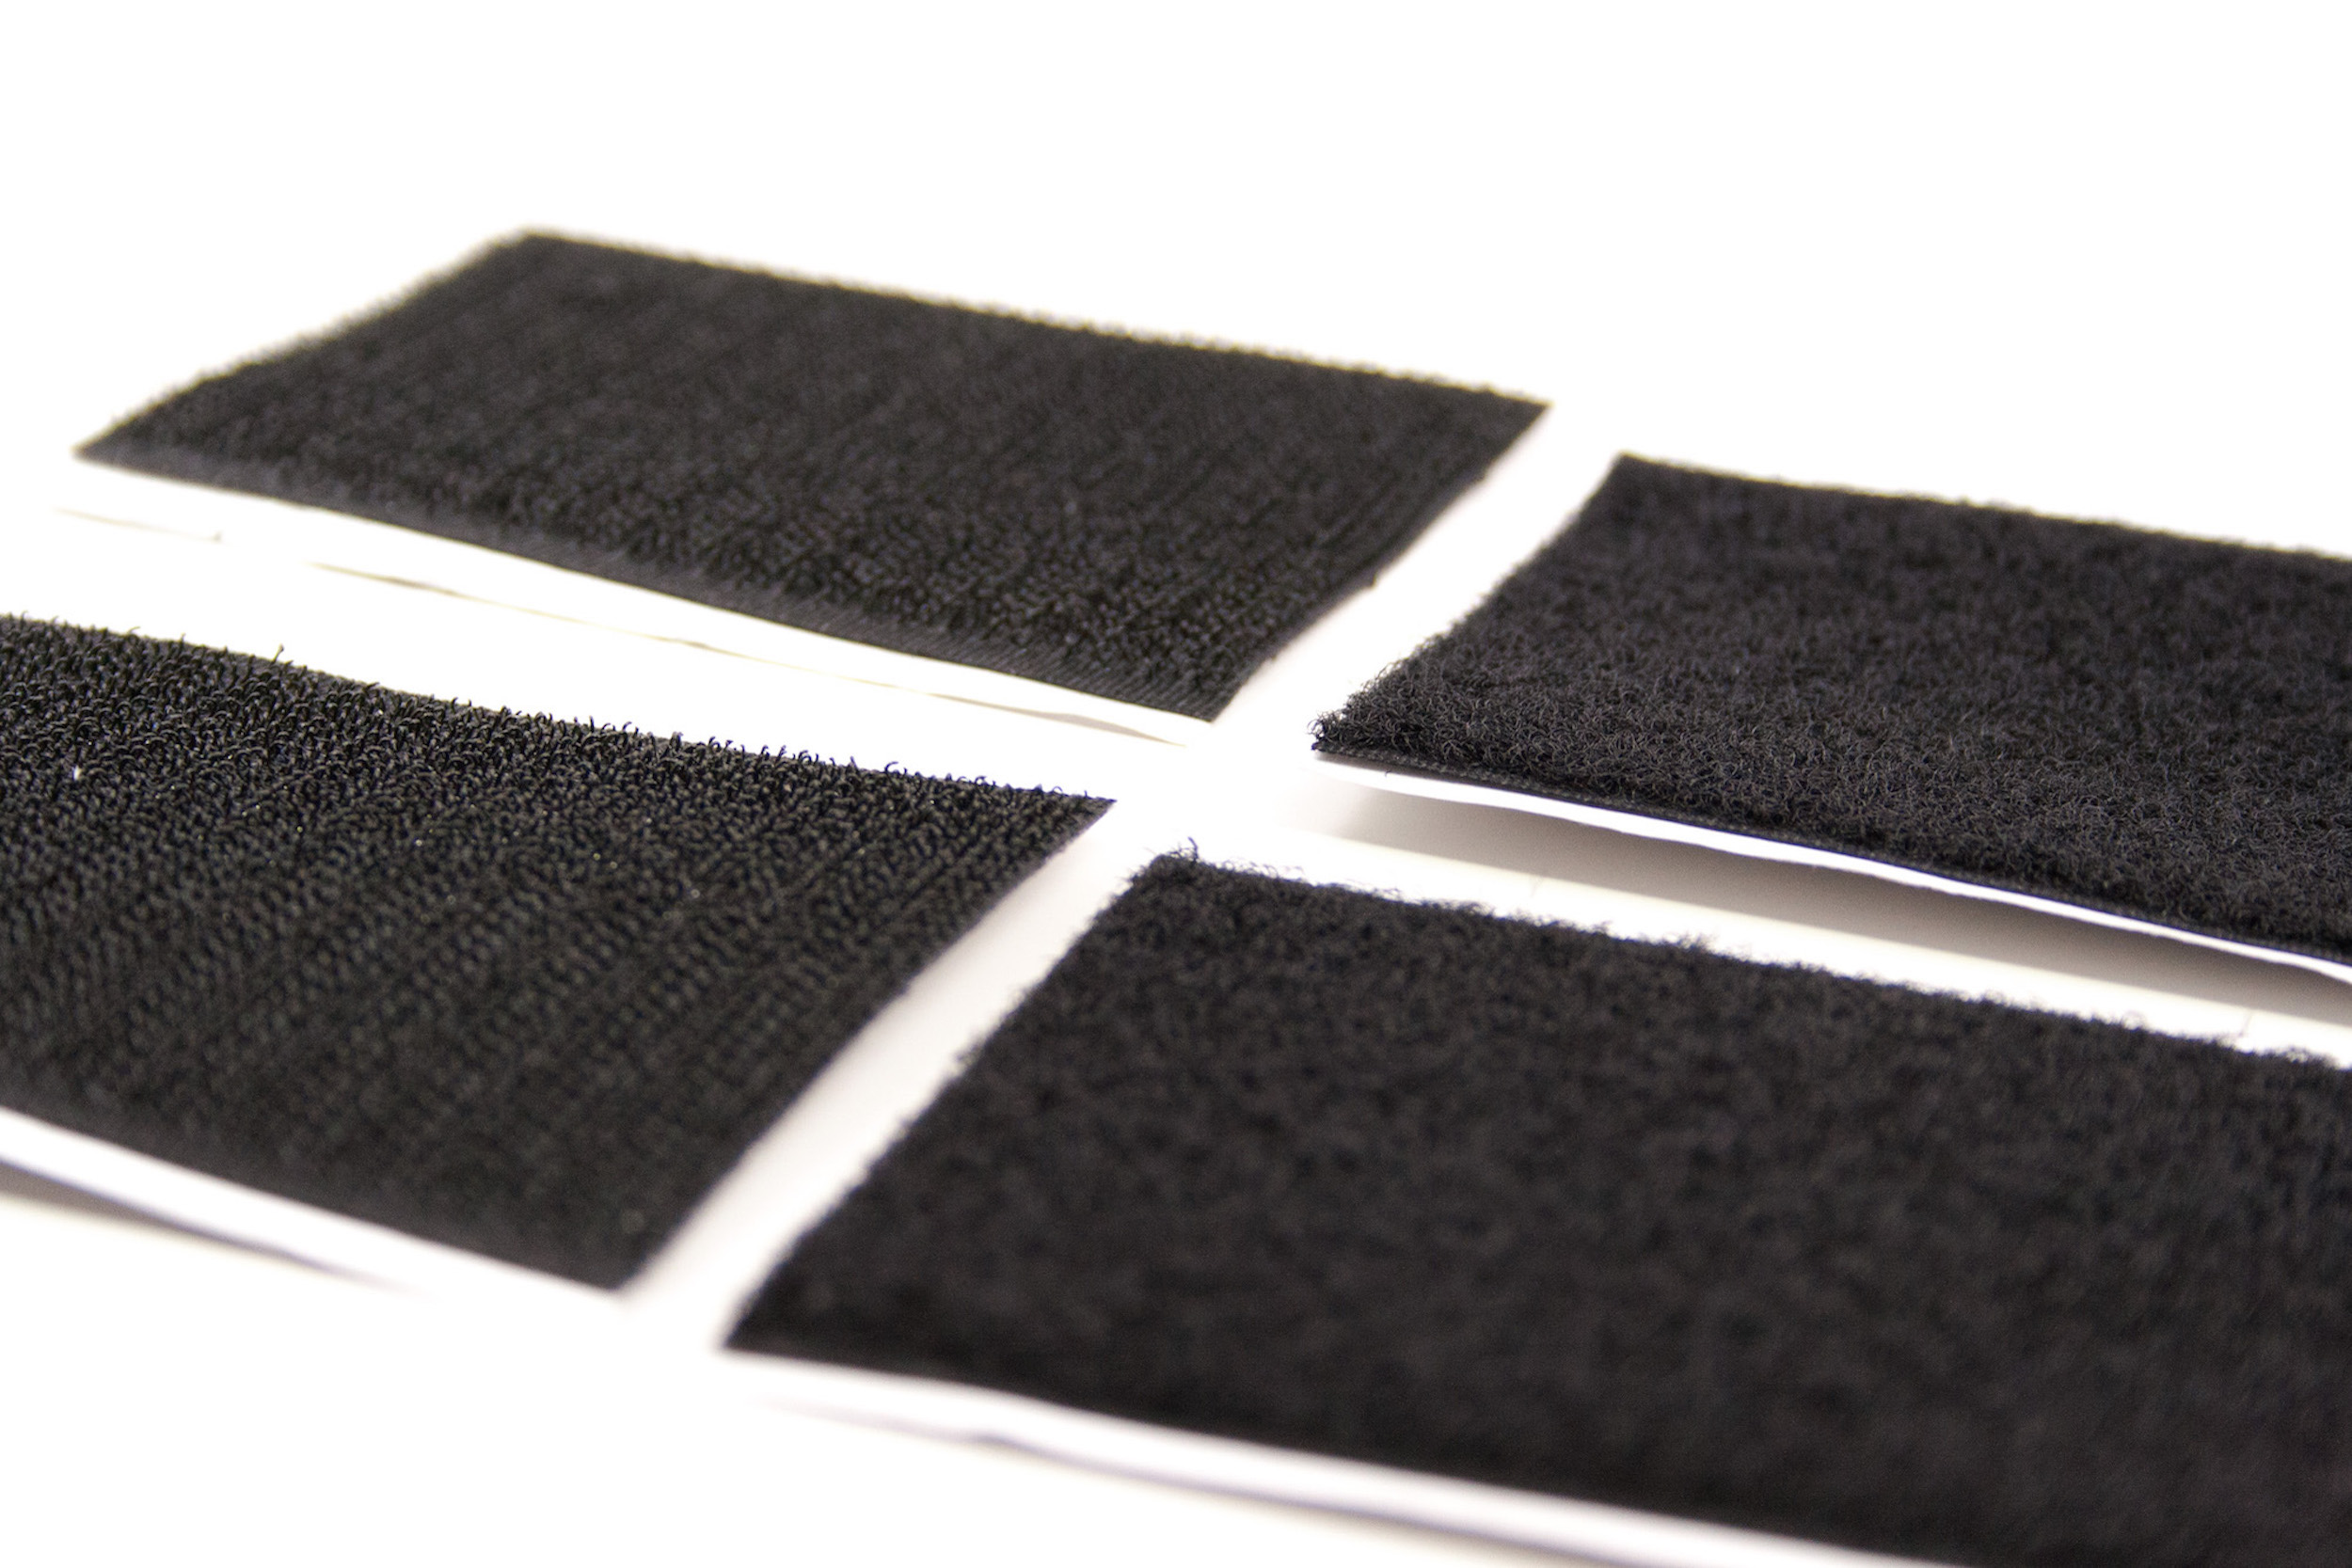 Morimoto Patches: Velcro